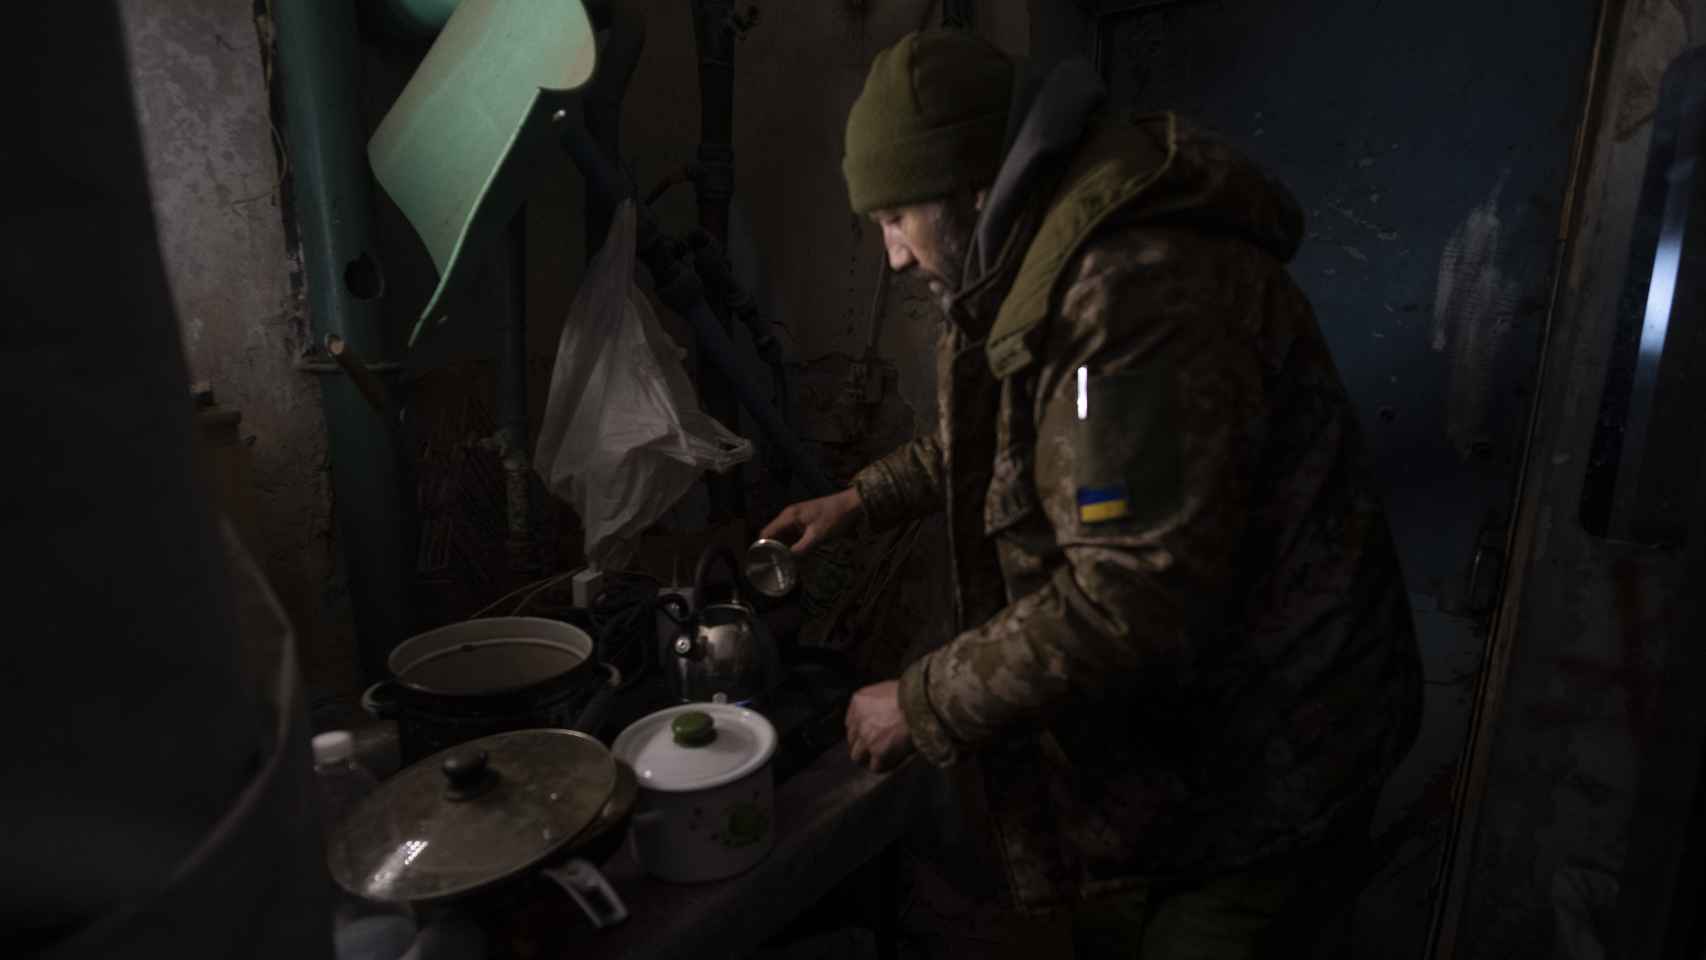 Un soldado ucraniano preparando café en Bakhmut, la ciudad cercada por el Ejército de Putin que vive a 750 metros de las líneas rusas.